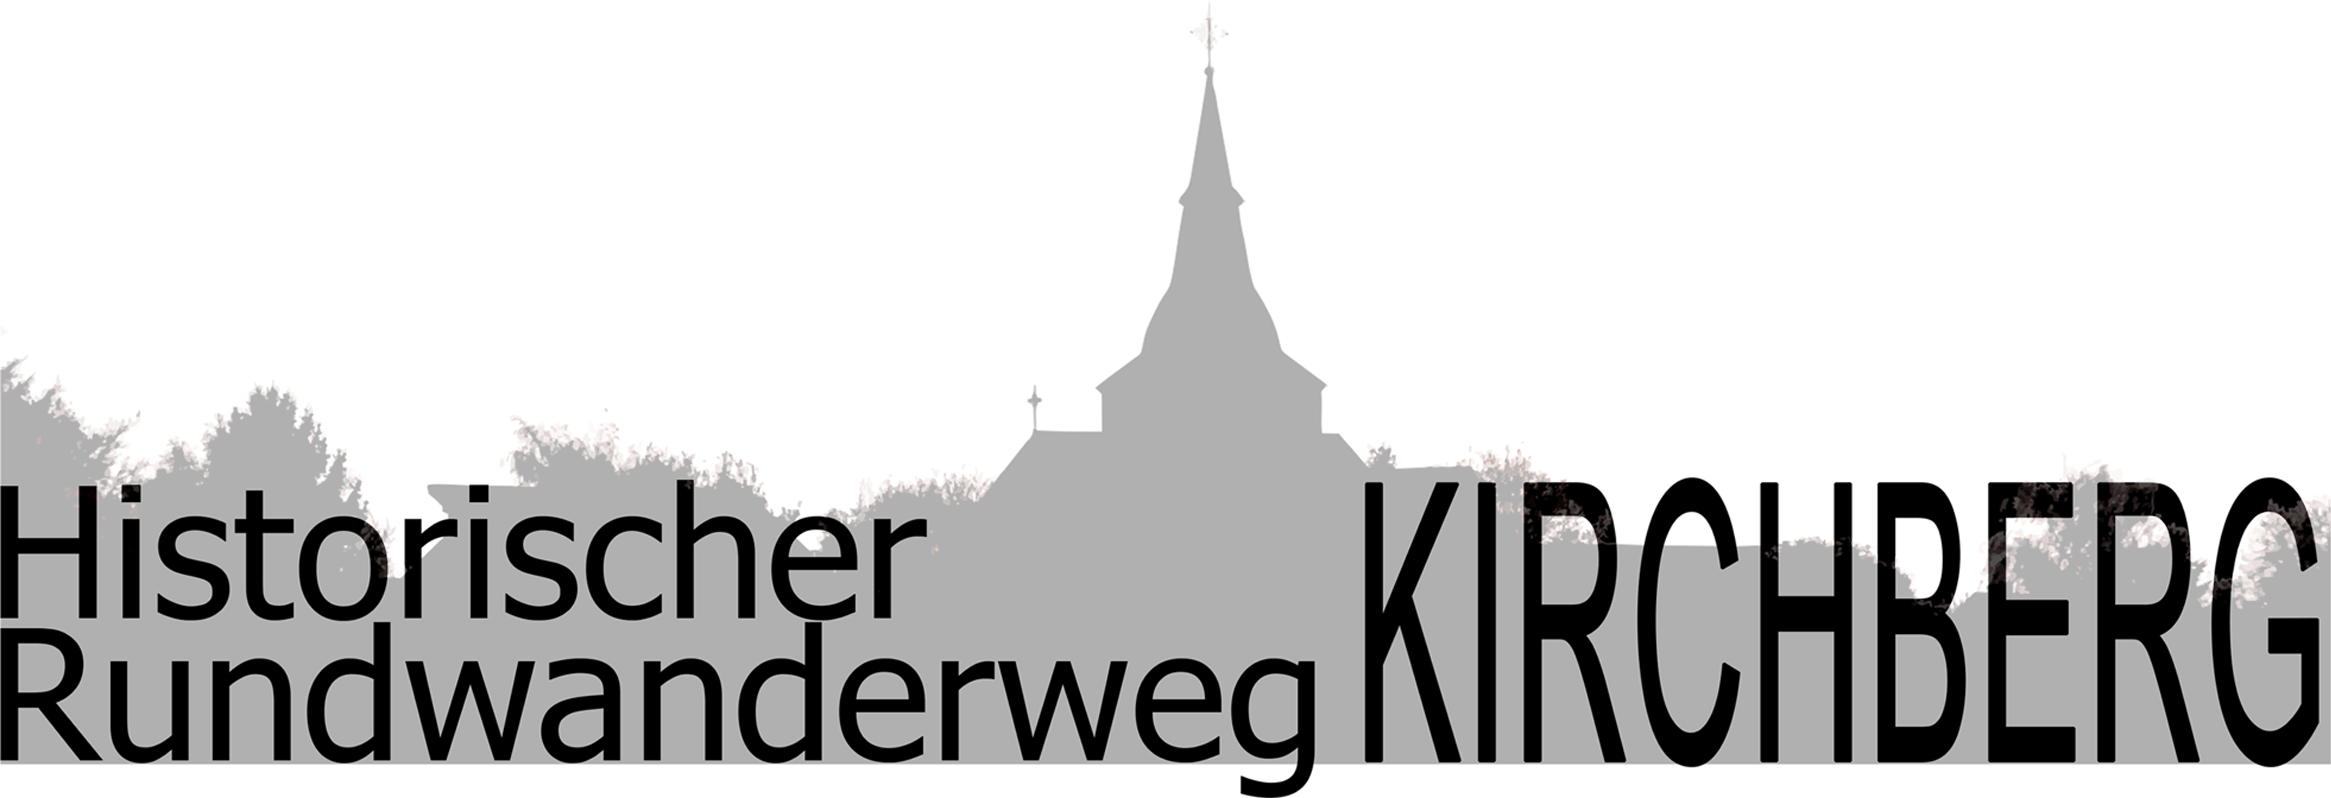 Logo Rundwanderweg Kirchberg